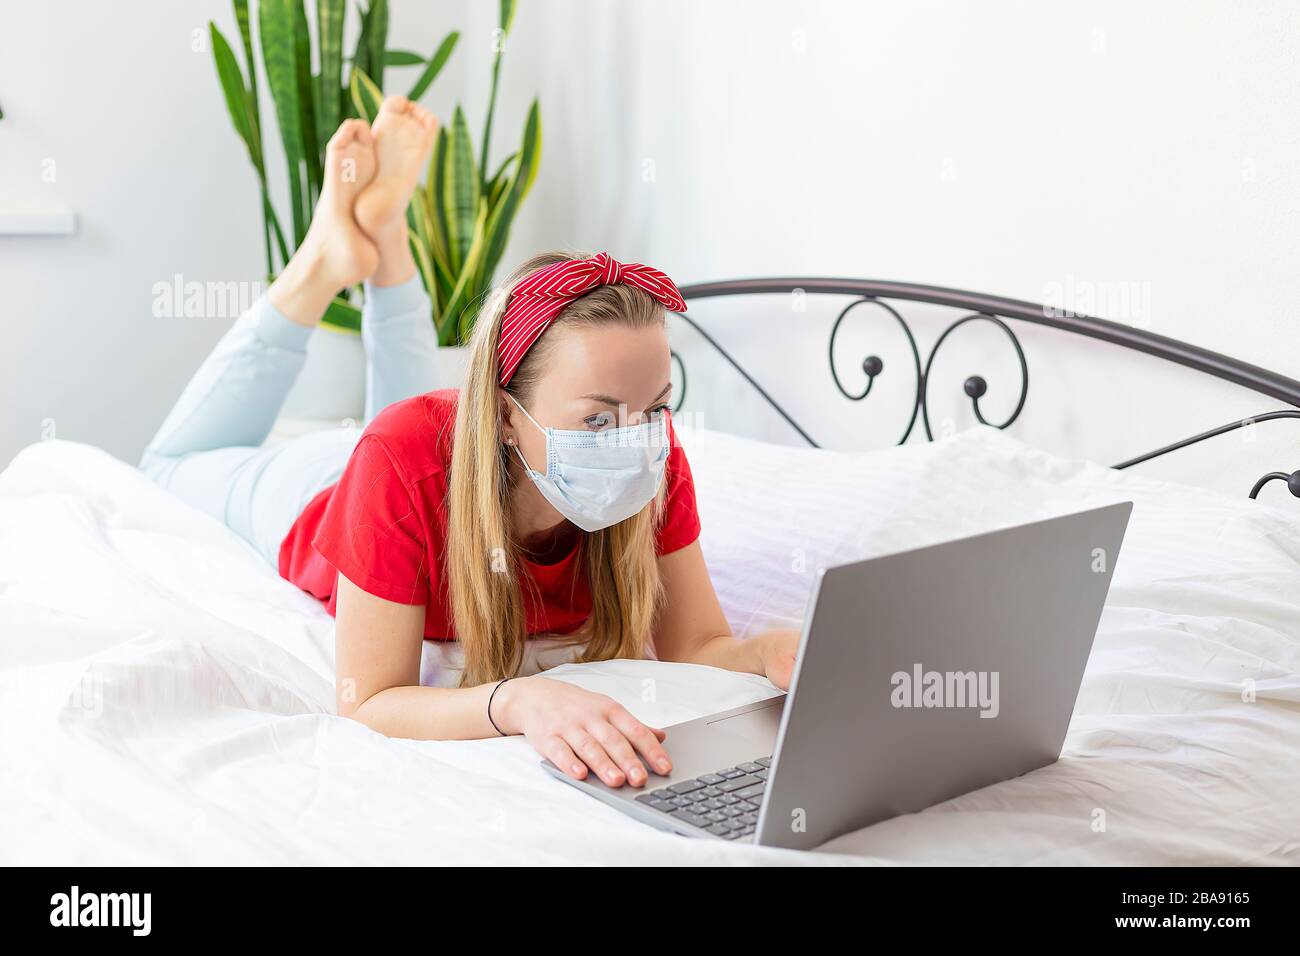 mujer joven enferma con una máscara médica y una camiseta roja y pantalones cómodos se encuentra en una cama blanca con un ordenador portátil. trabaja desde casa debido al coro Foto de stock